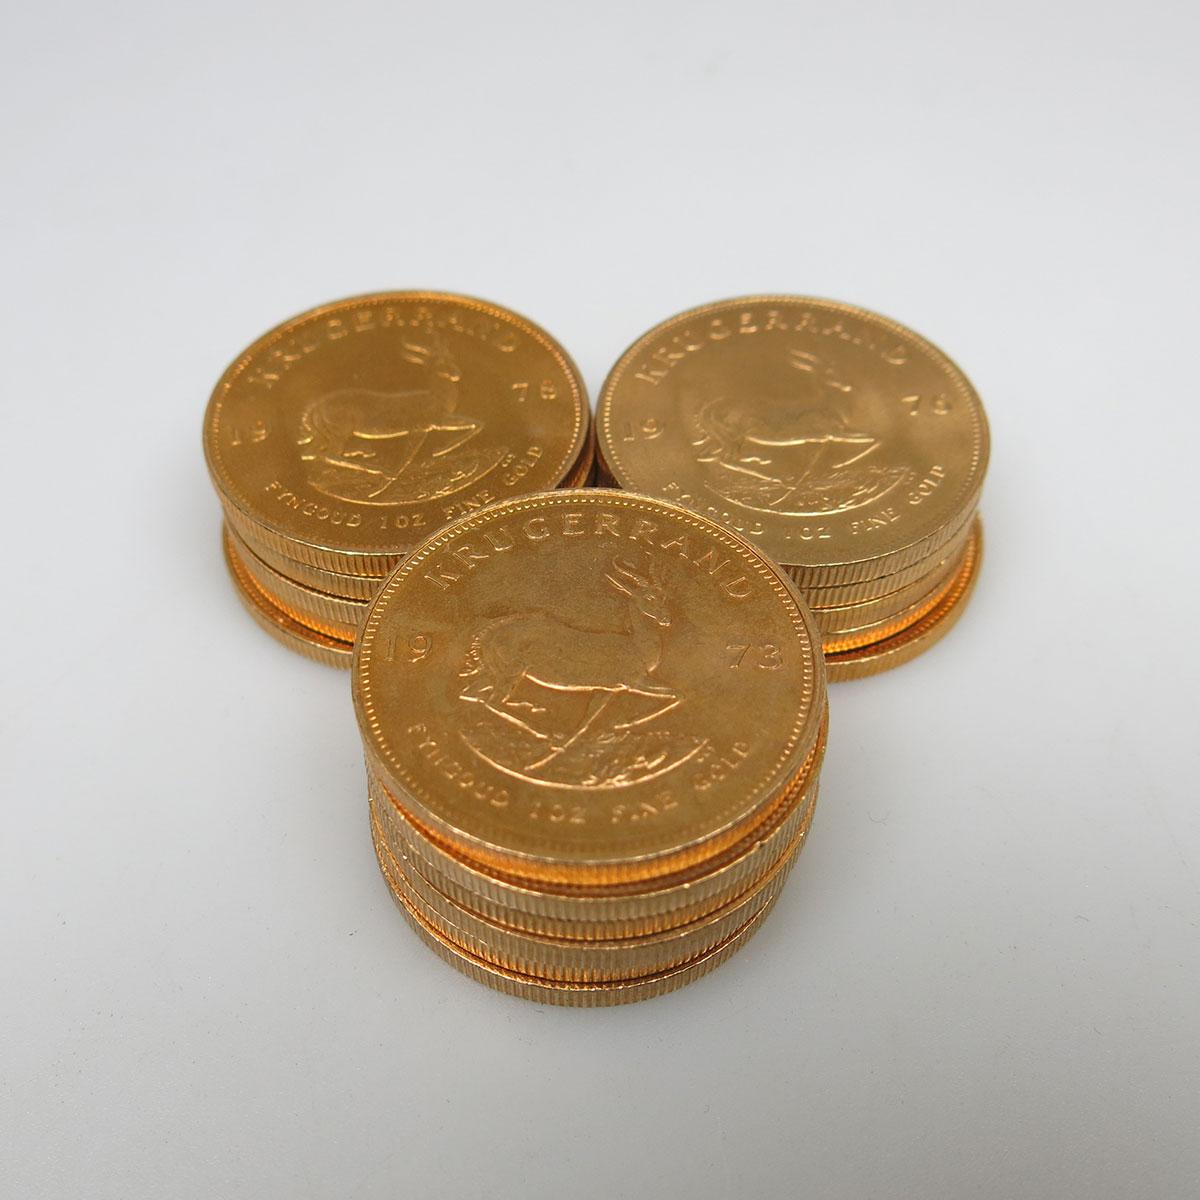 16 Krugerrand Gold Coins